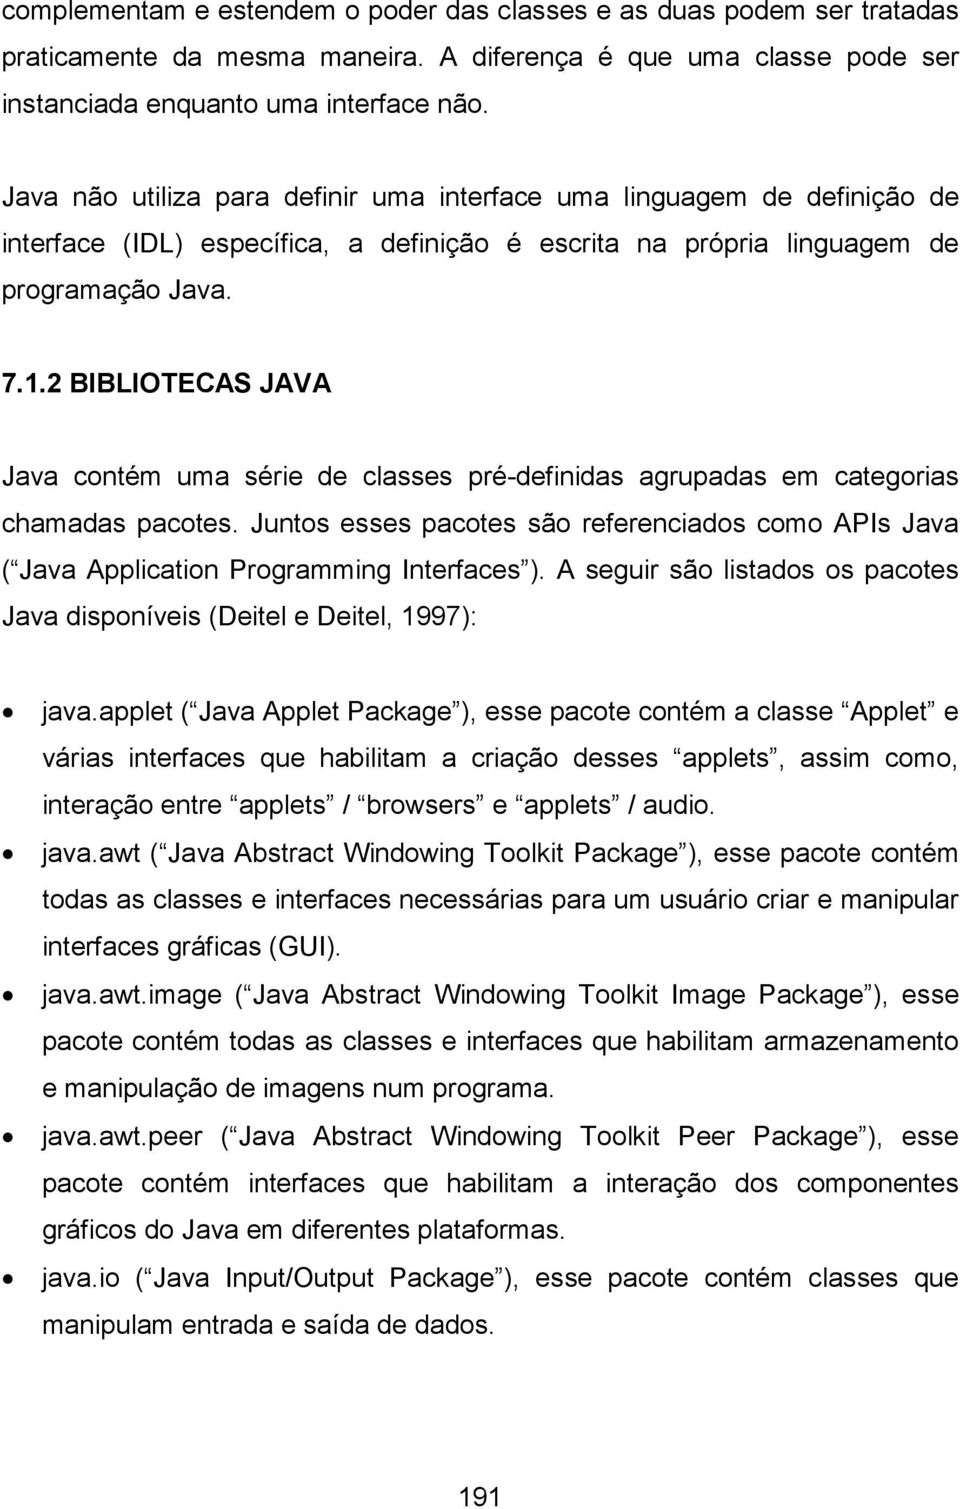 2 BIBLIOTECAS JAVA Java contém uma série de classes pré-definidas agrupadas em categorias chamadas pacotes.